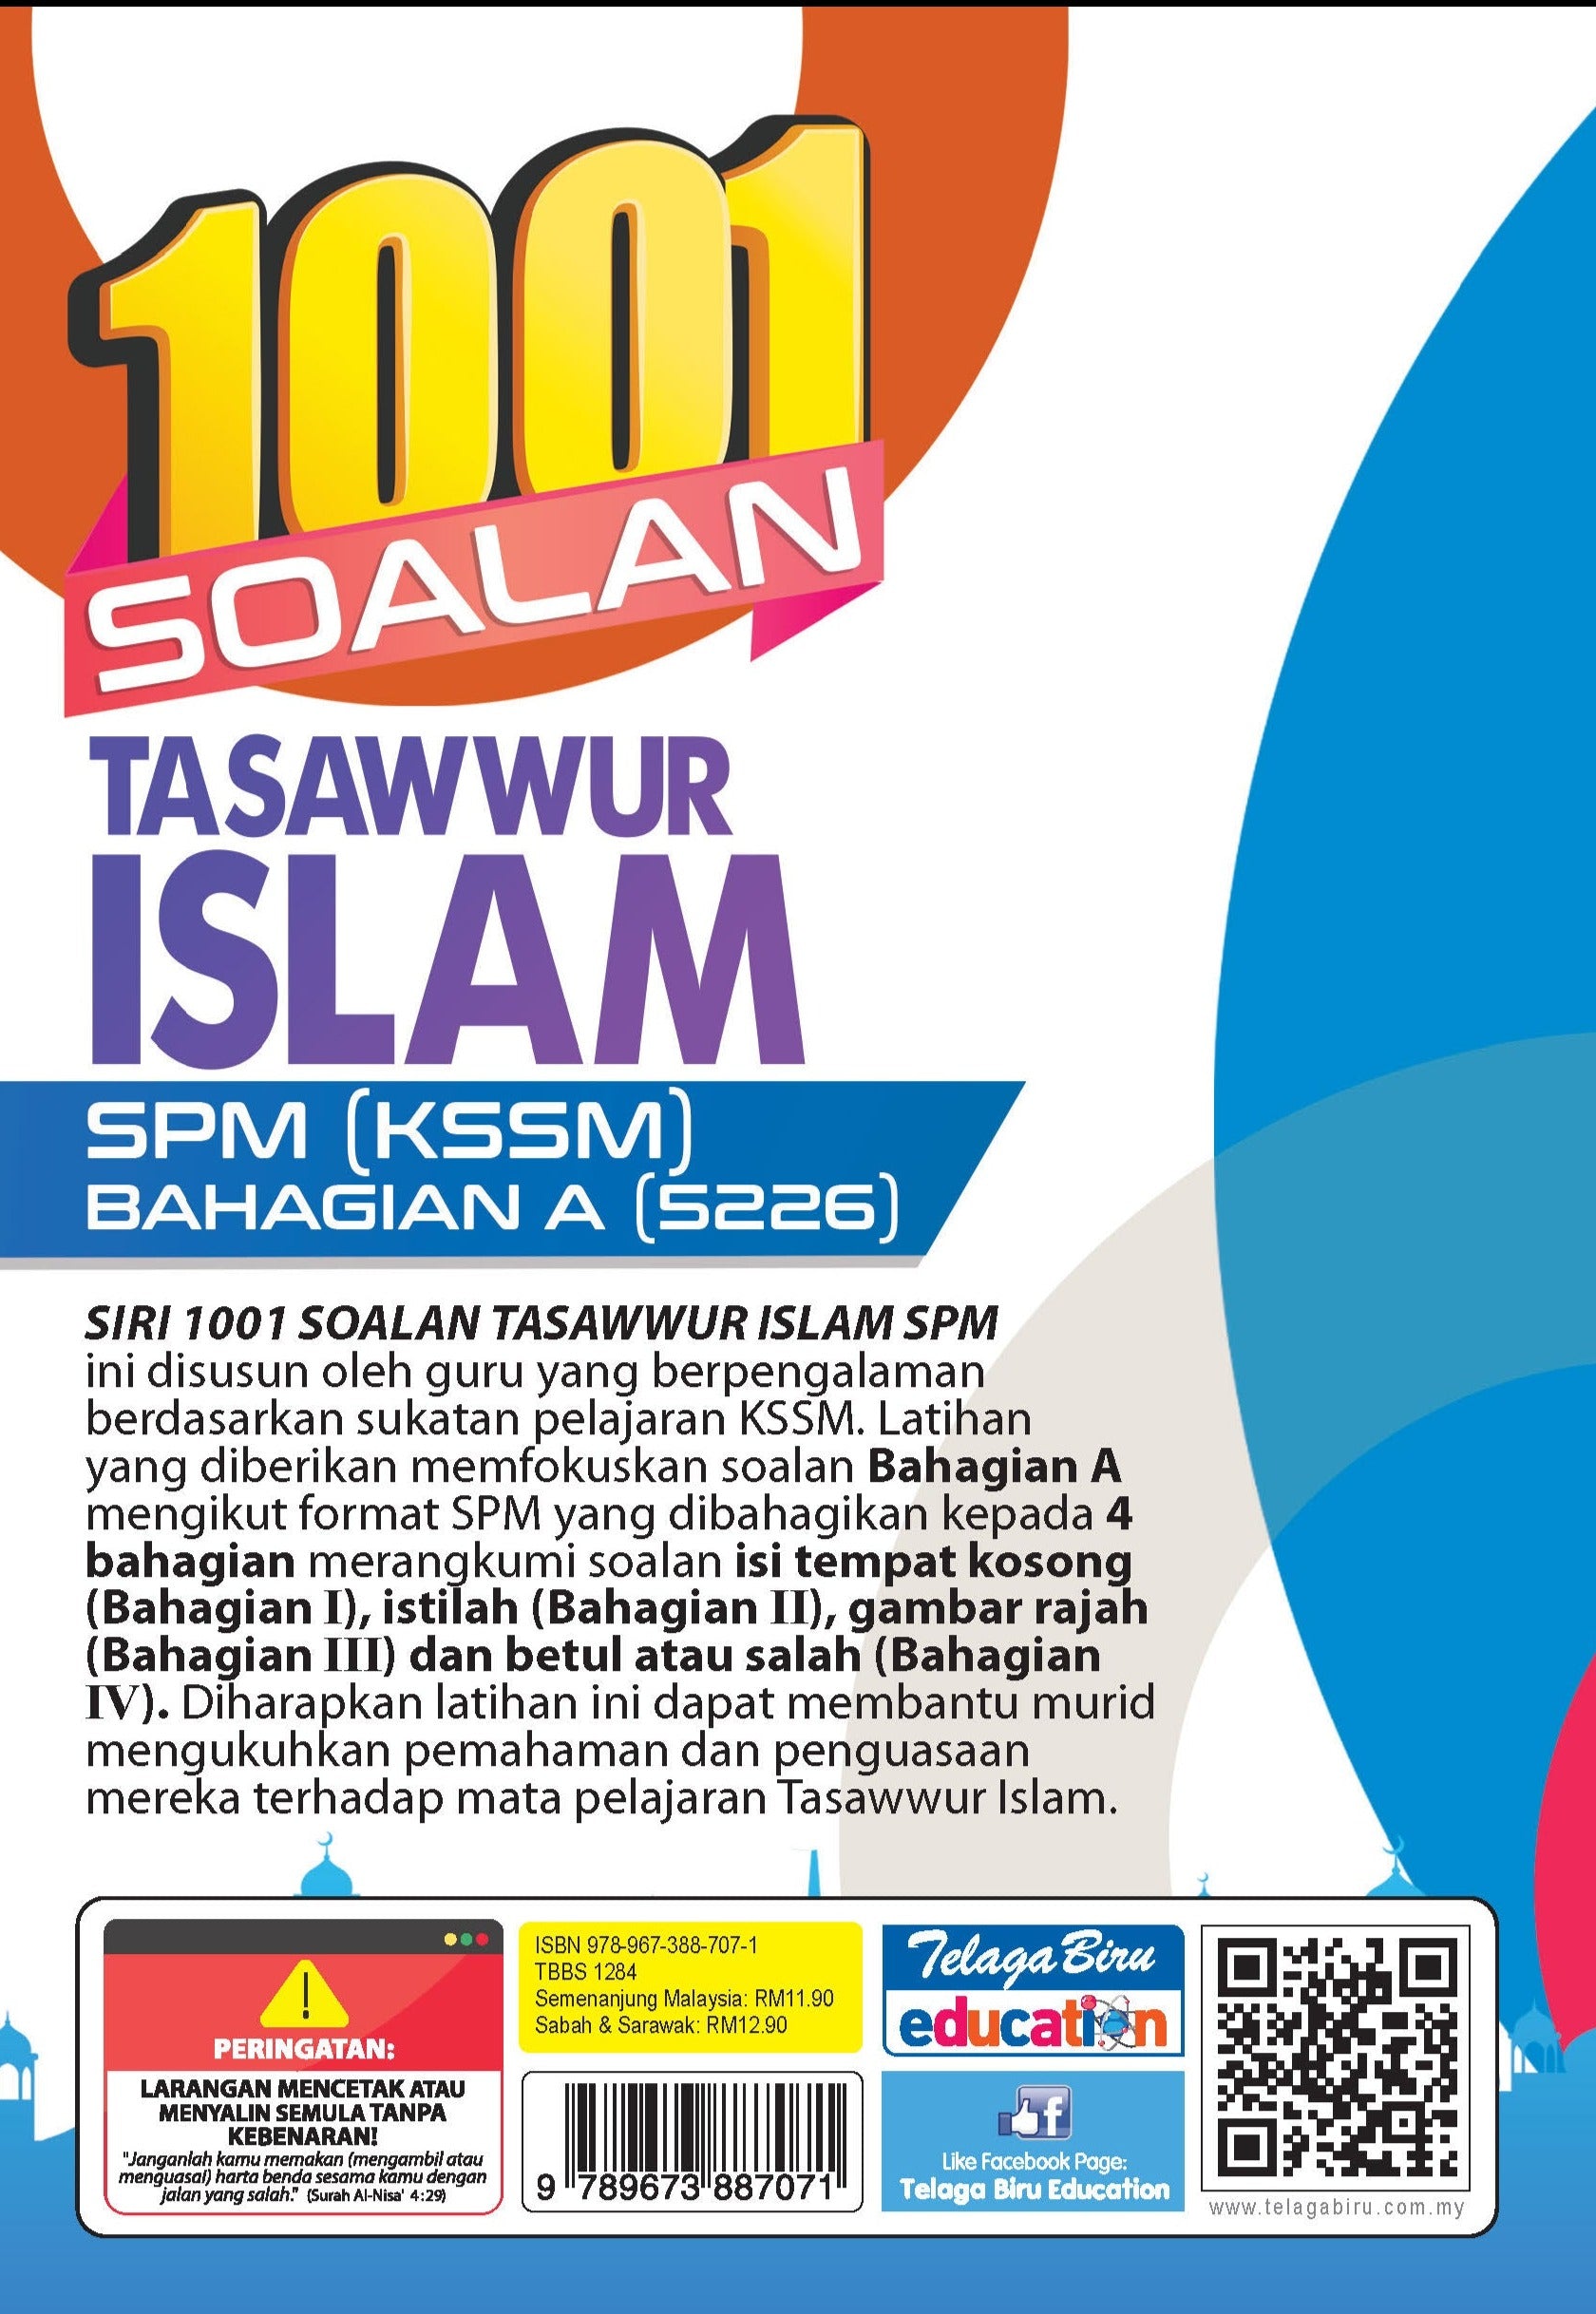 1001 Soalan Tasawwur Islam (Bahagian A) - (TBBS1284)